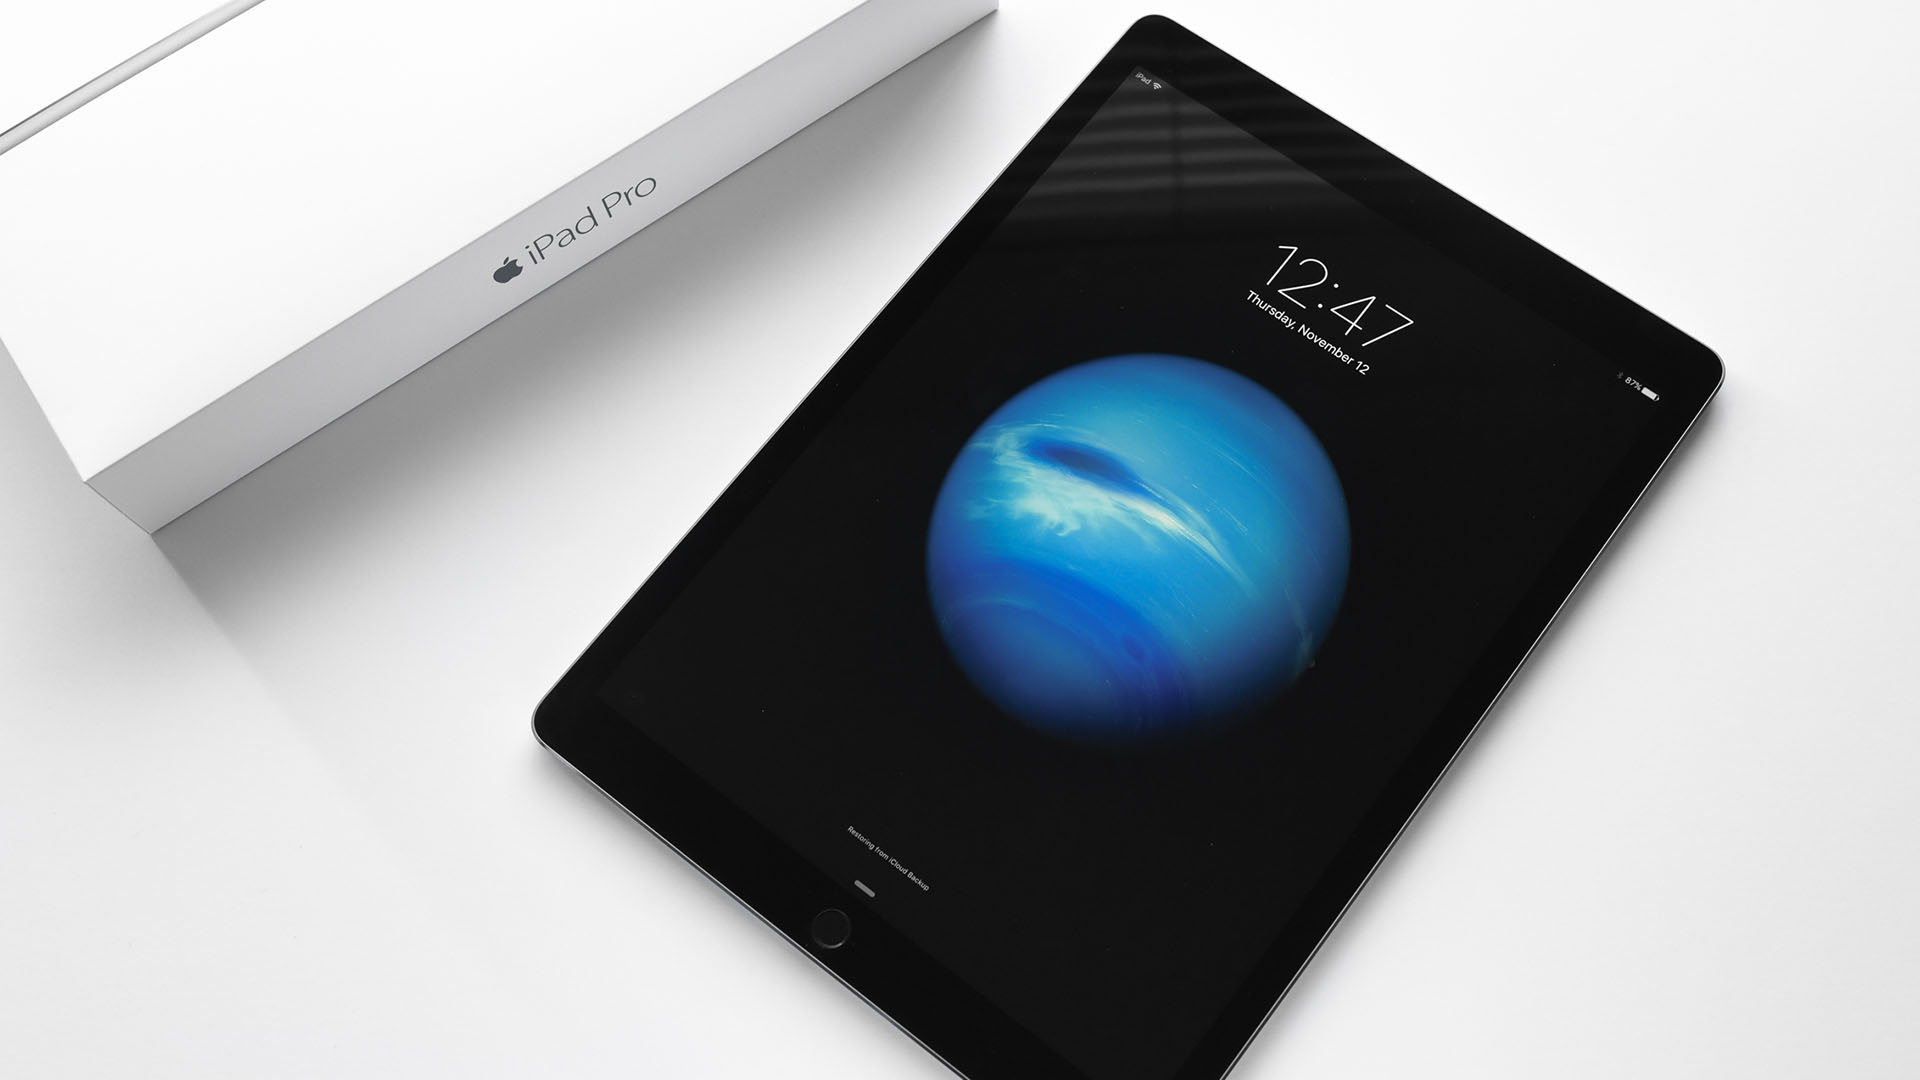 iPad Pro 9.7 da 32 GB, come variano i prezzi in Rete?